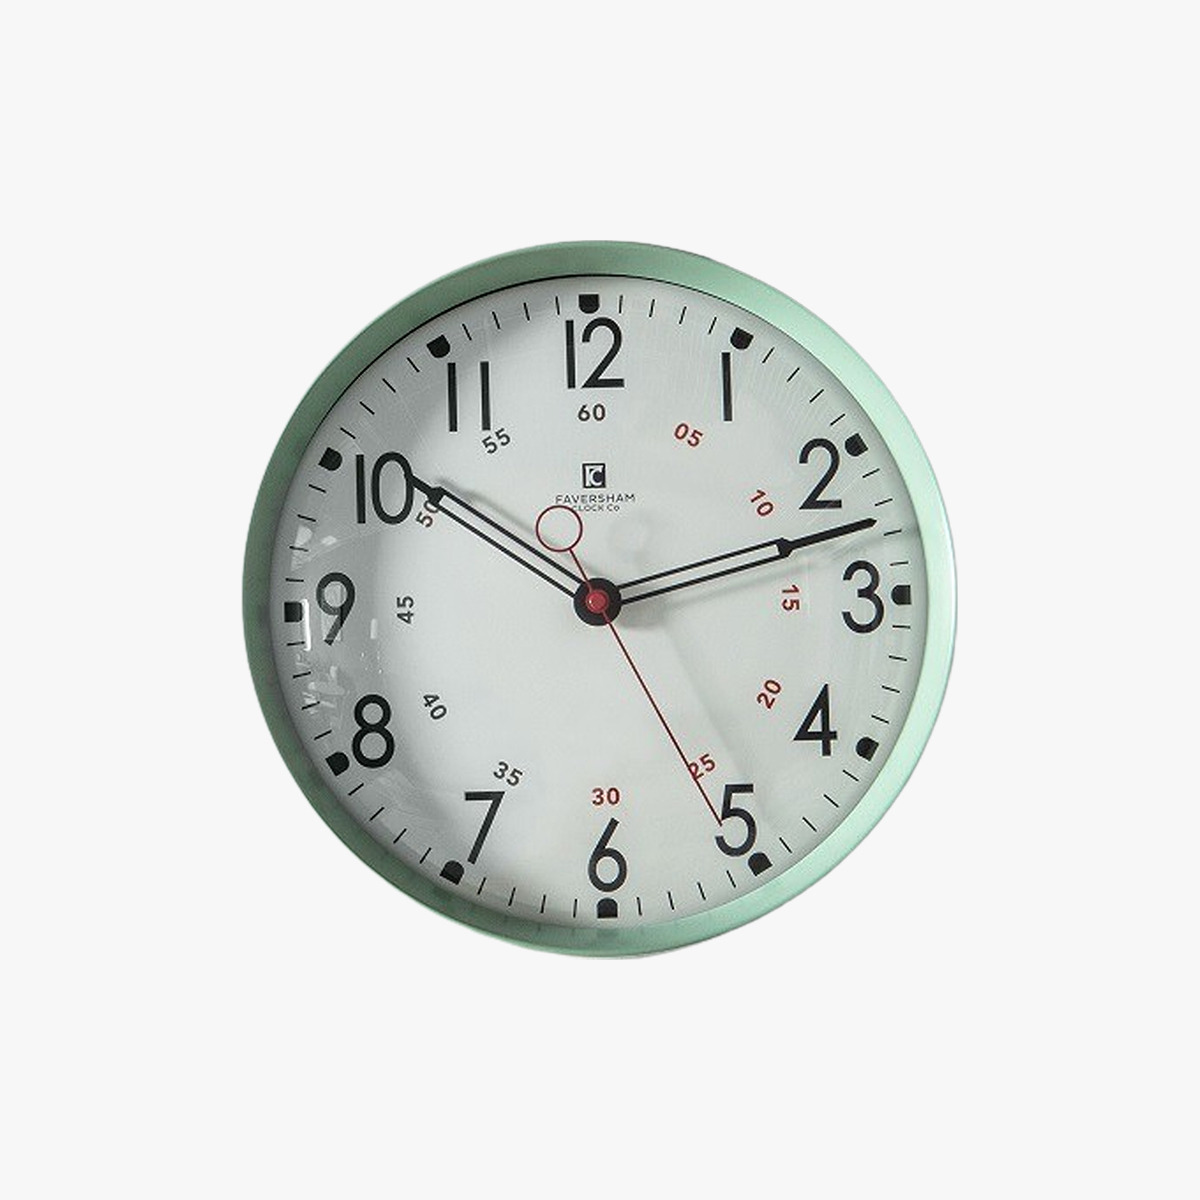 Tate Wall Clock in Mint Green